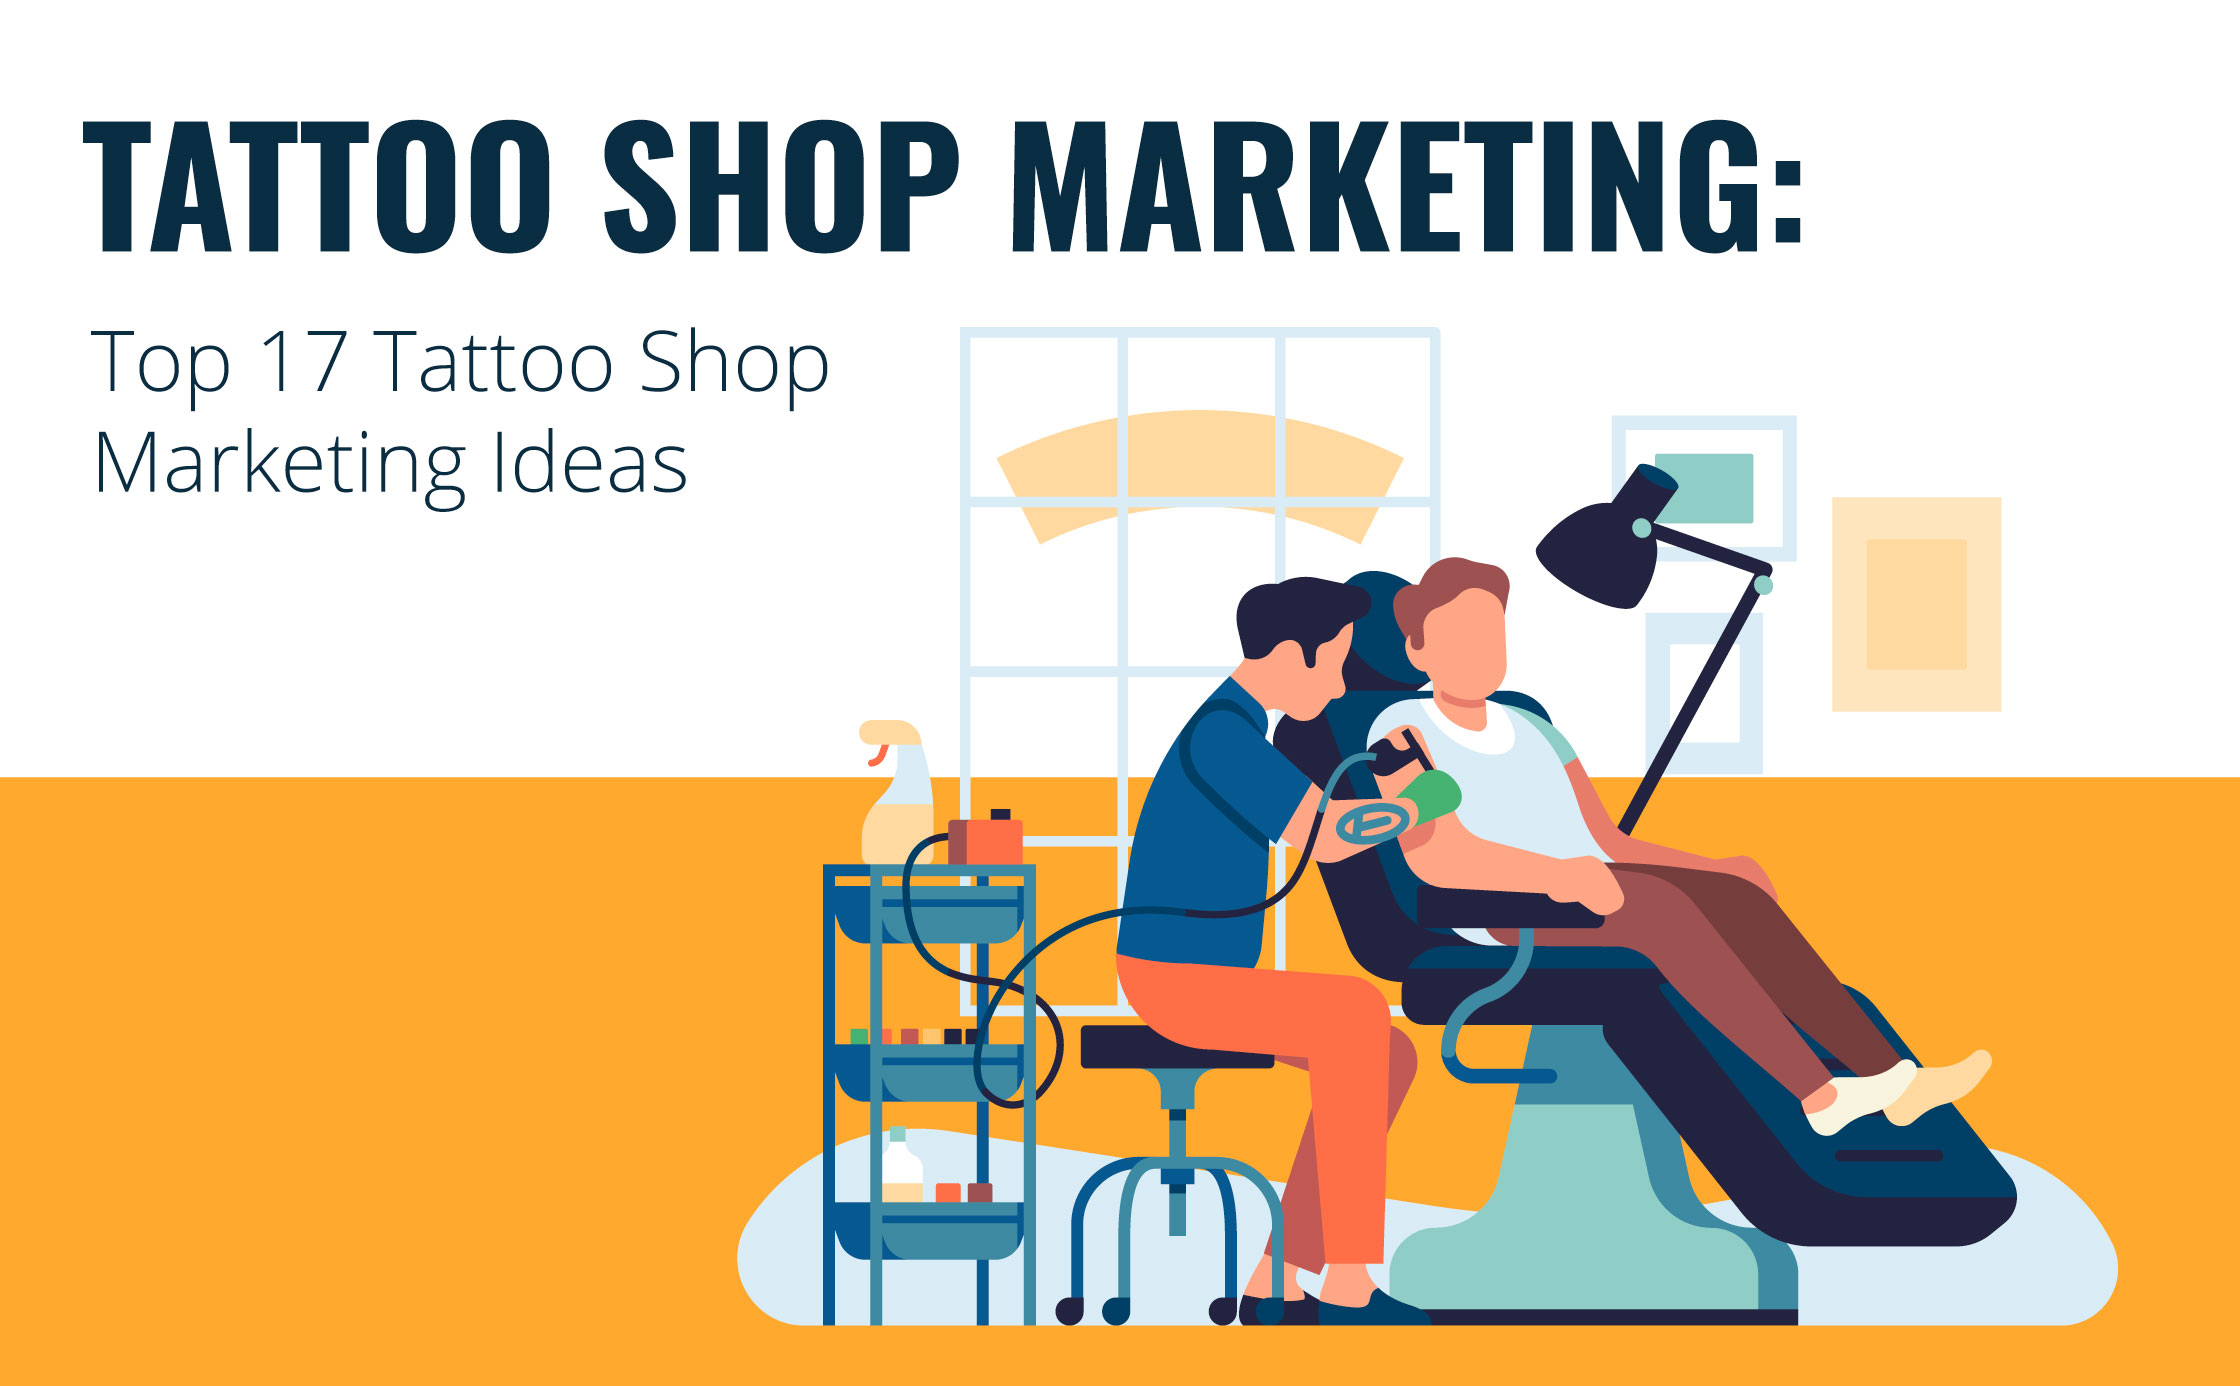 Top 17 Tattoo Shop Marketing Ideas